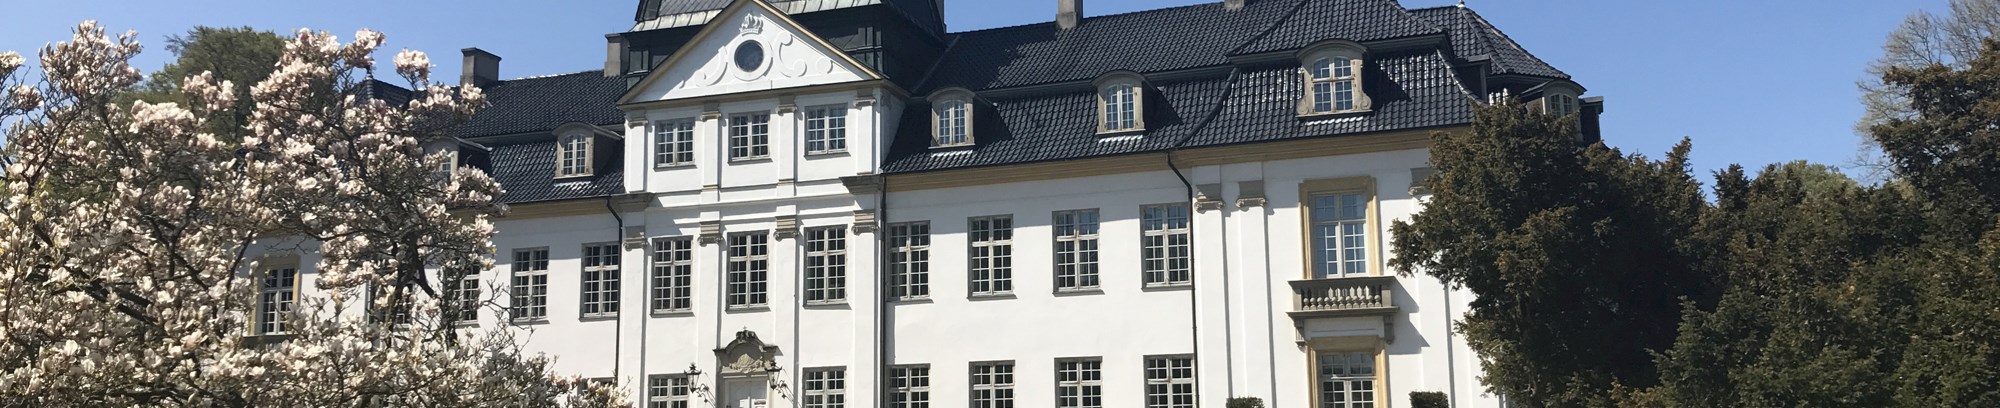 Besøg Charlottenlund Slot med FOF Nordsjælland